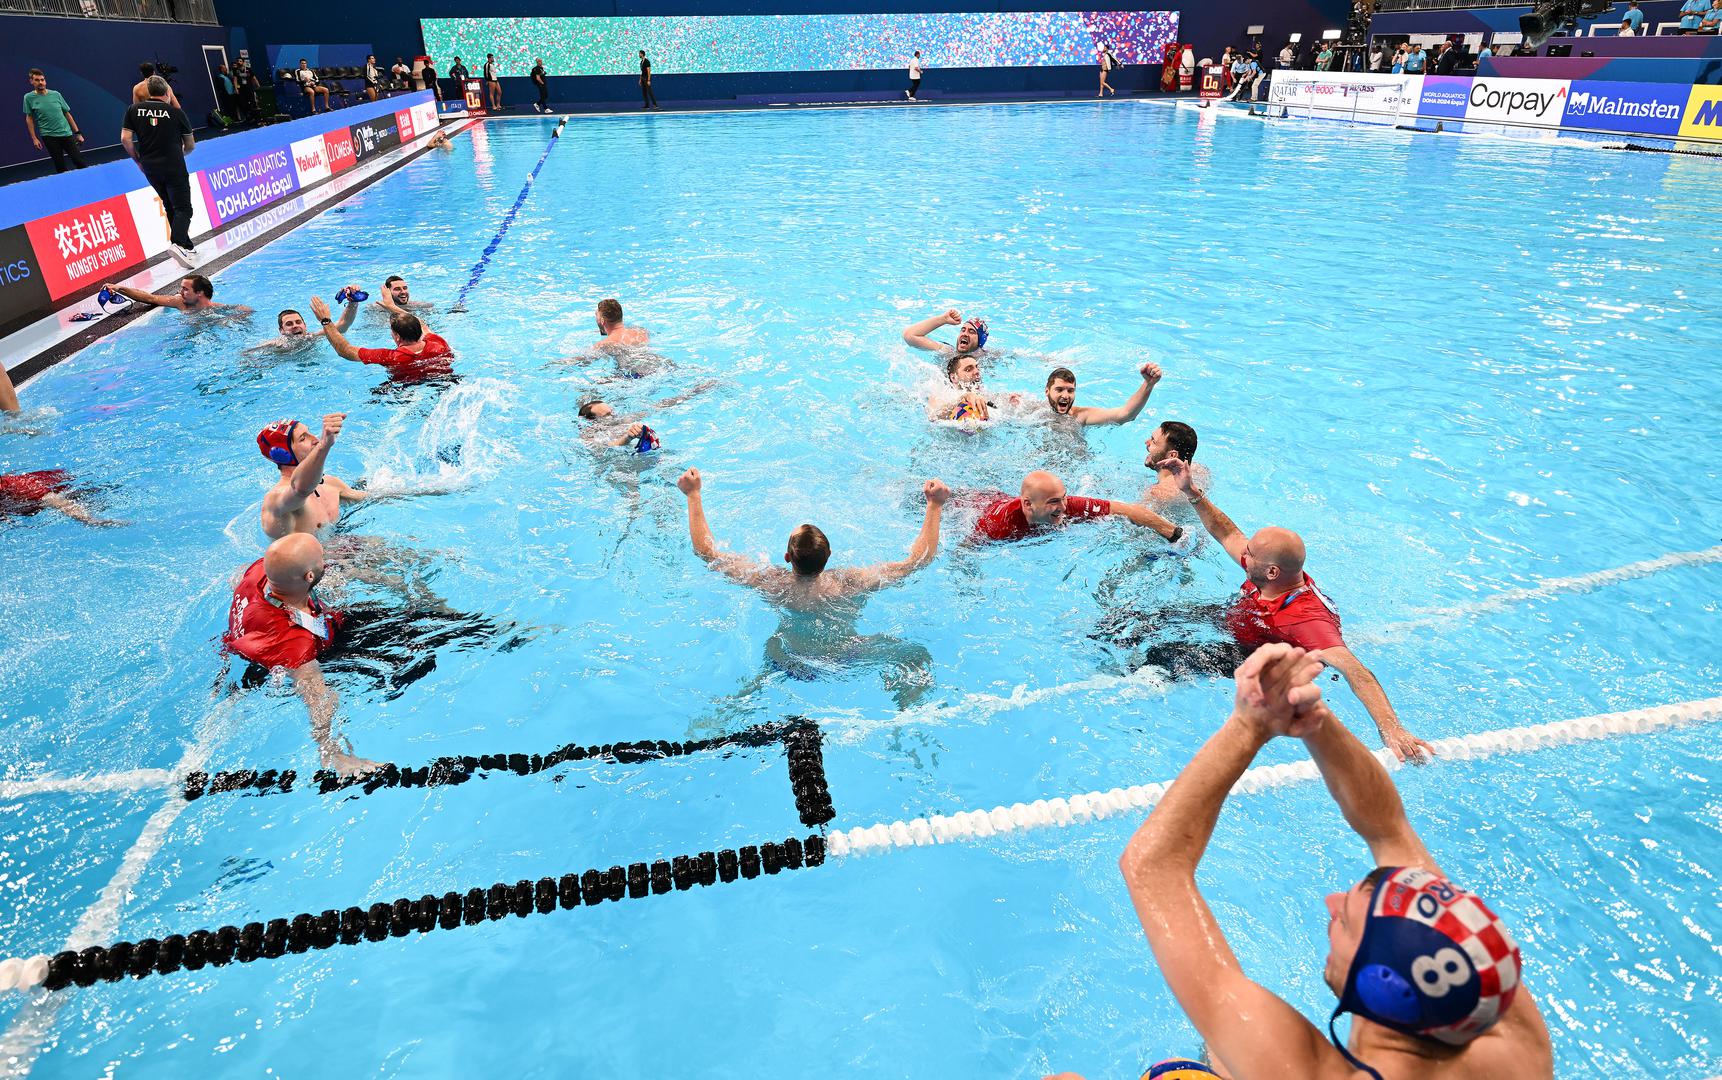 Hrvatska muška vaterpolska reprezentacija osvojila je naslov svjetskog prvaka u Dohi, u finalu je svladala Italiju sa 15-13 (2-3, 3-2, 3-2, 3-4; 4-2) nakon peteraca. A onda je krenula i fešta u bazenu...